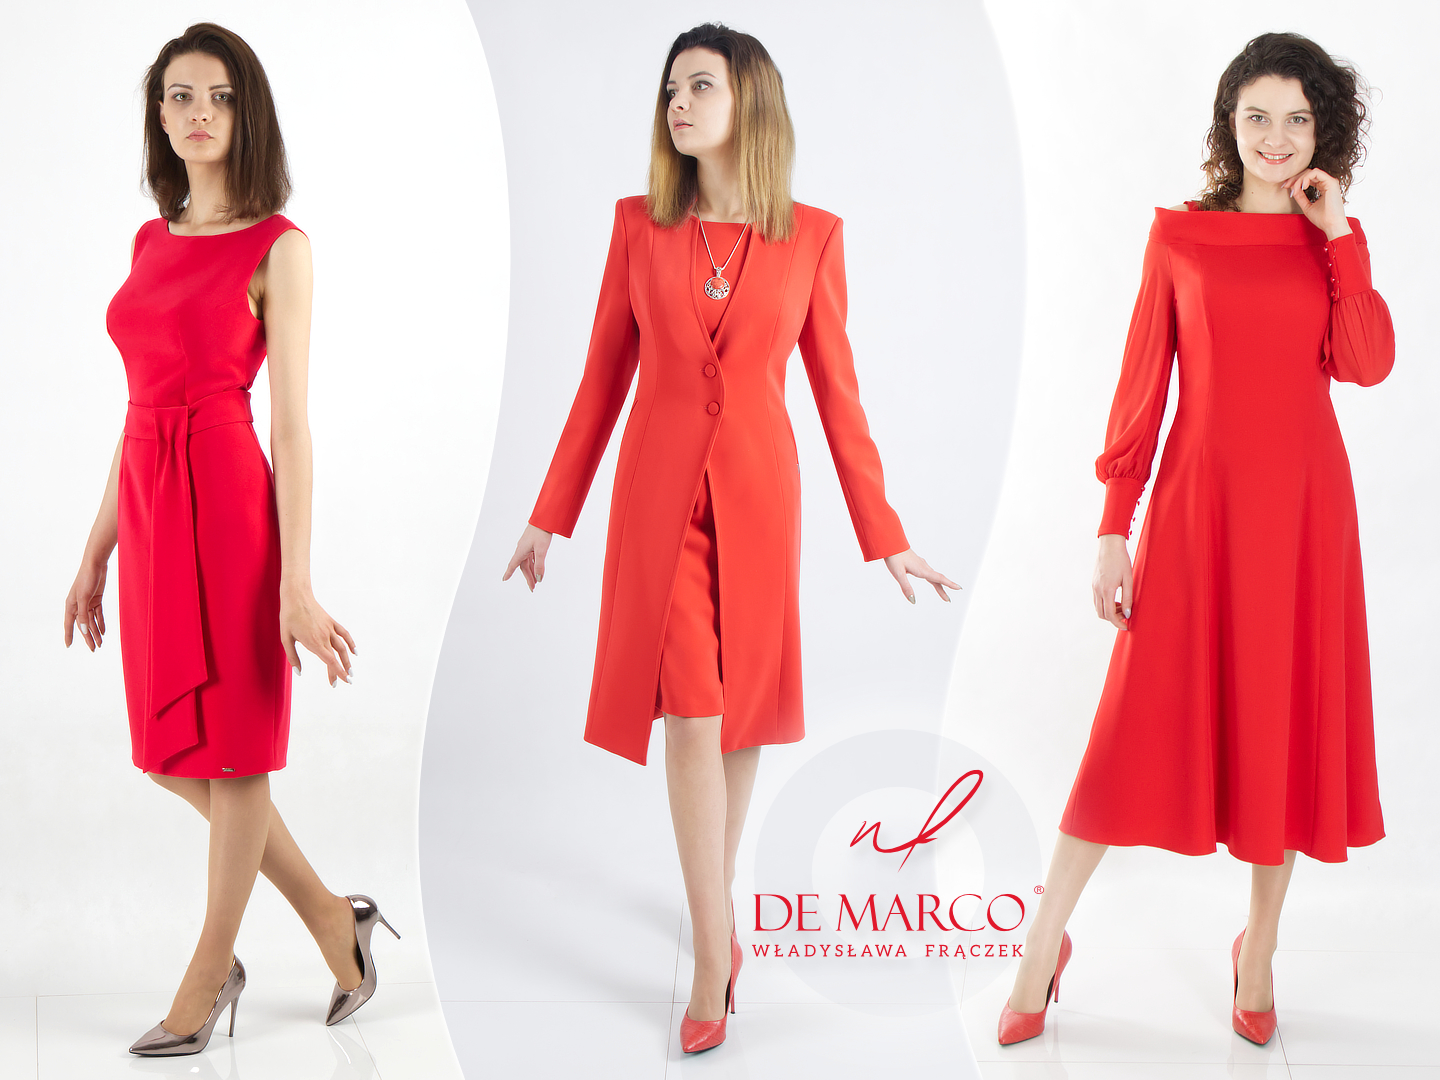 Die eleganten roten Modelle von De Marco. Zu wem passen sie, mit wem kombinieren Sie sie?